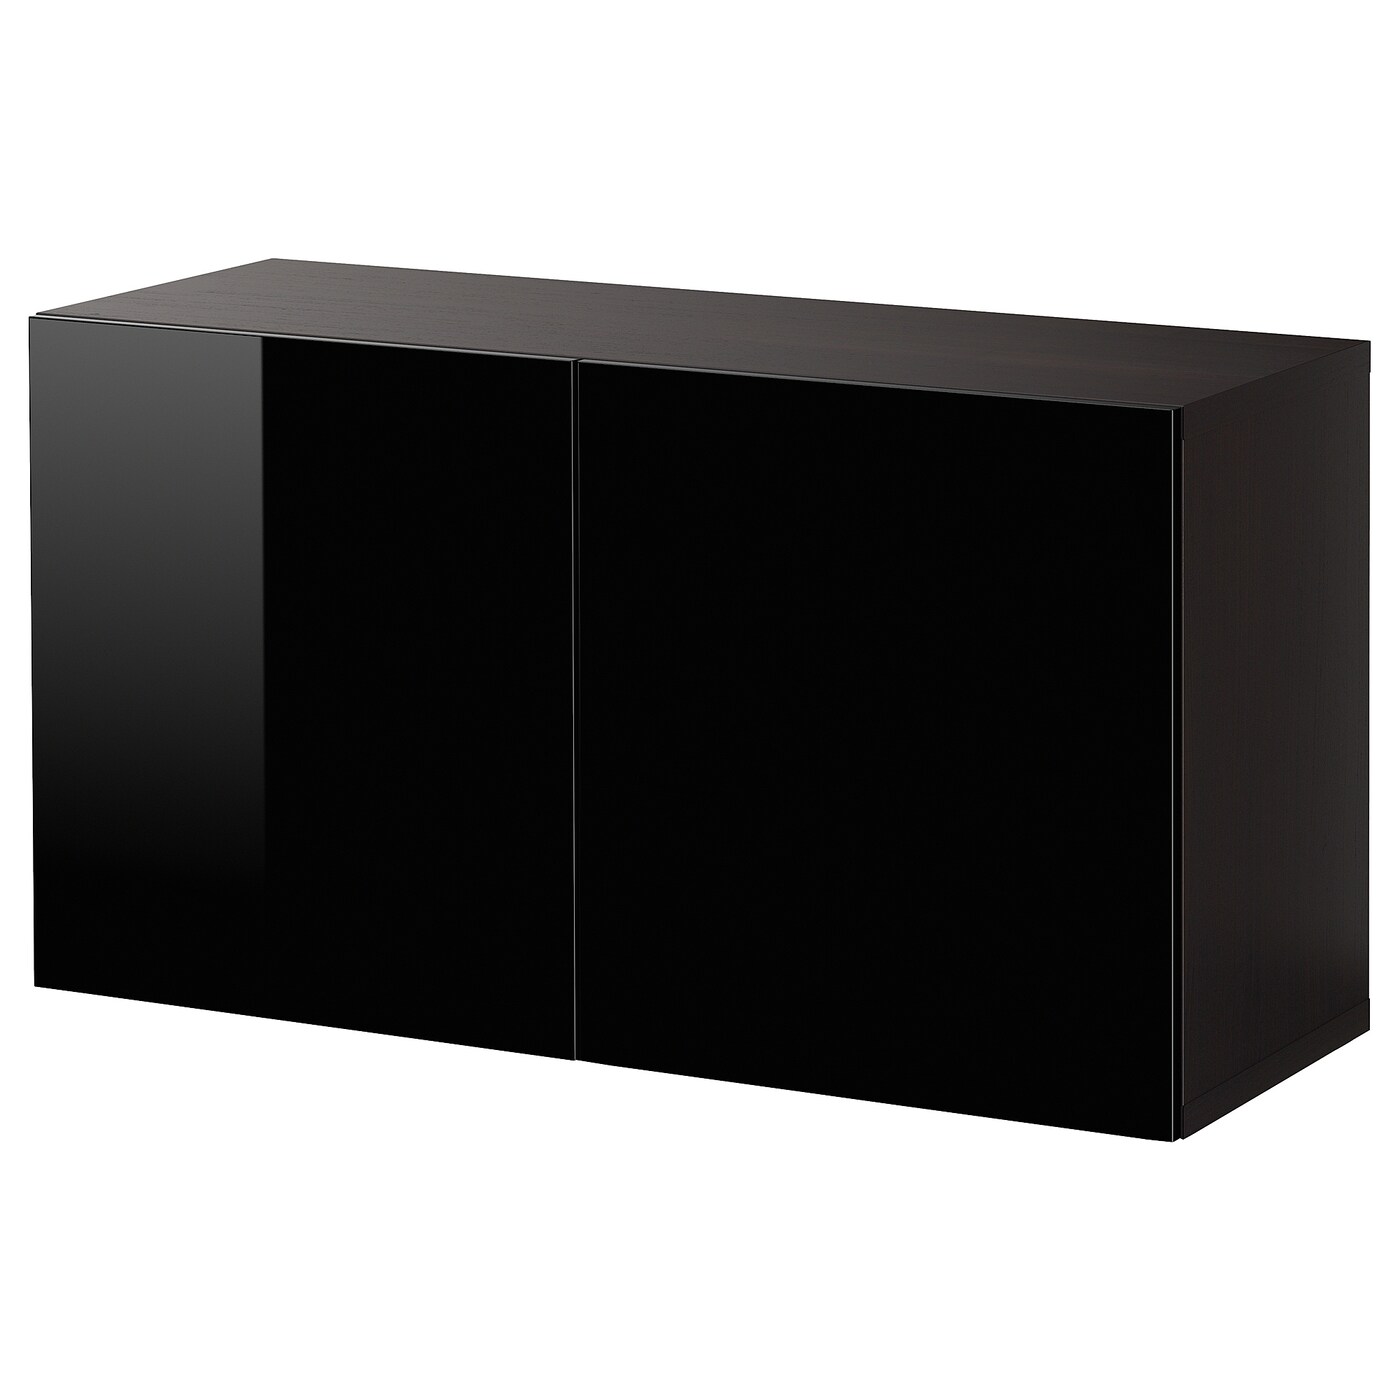 Навесной шкаф - IKEA BESTÅ/BESTA, 120x42x64 см, черный, БЕСТО ИКЕА